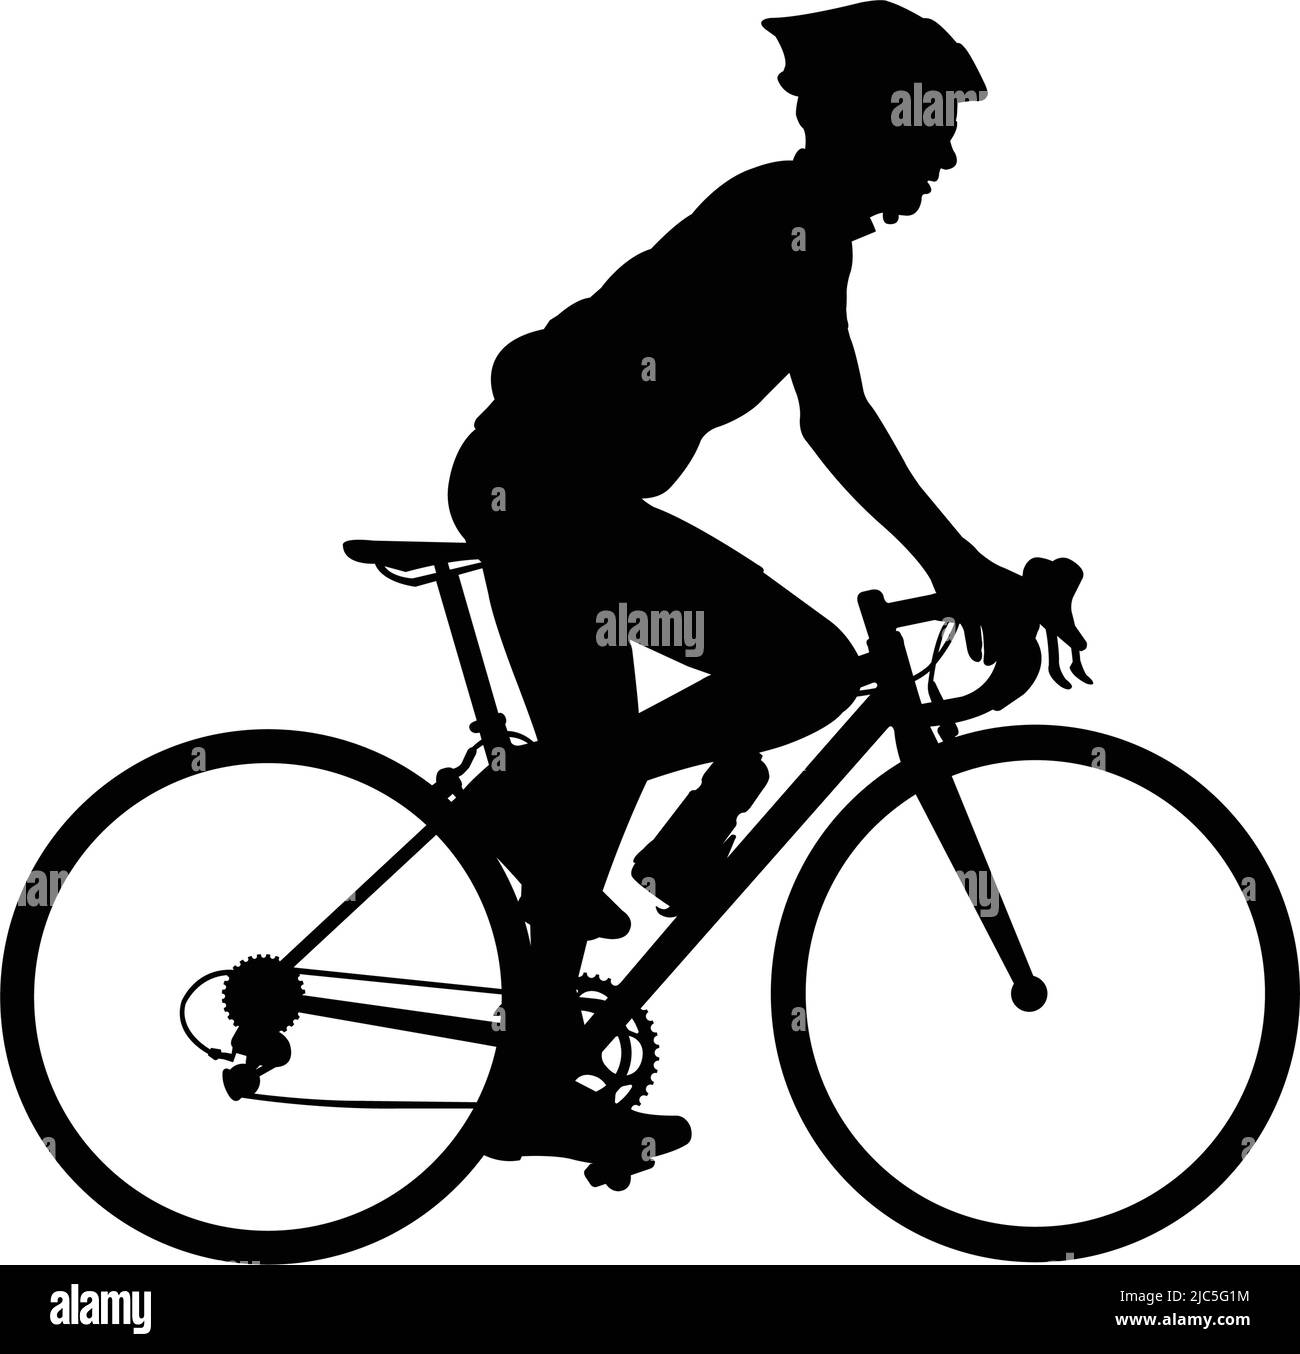 Hochwertige Rennen Fahrradfahrer Silhouette - Vektor Stock Vektor